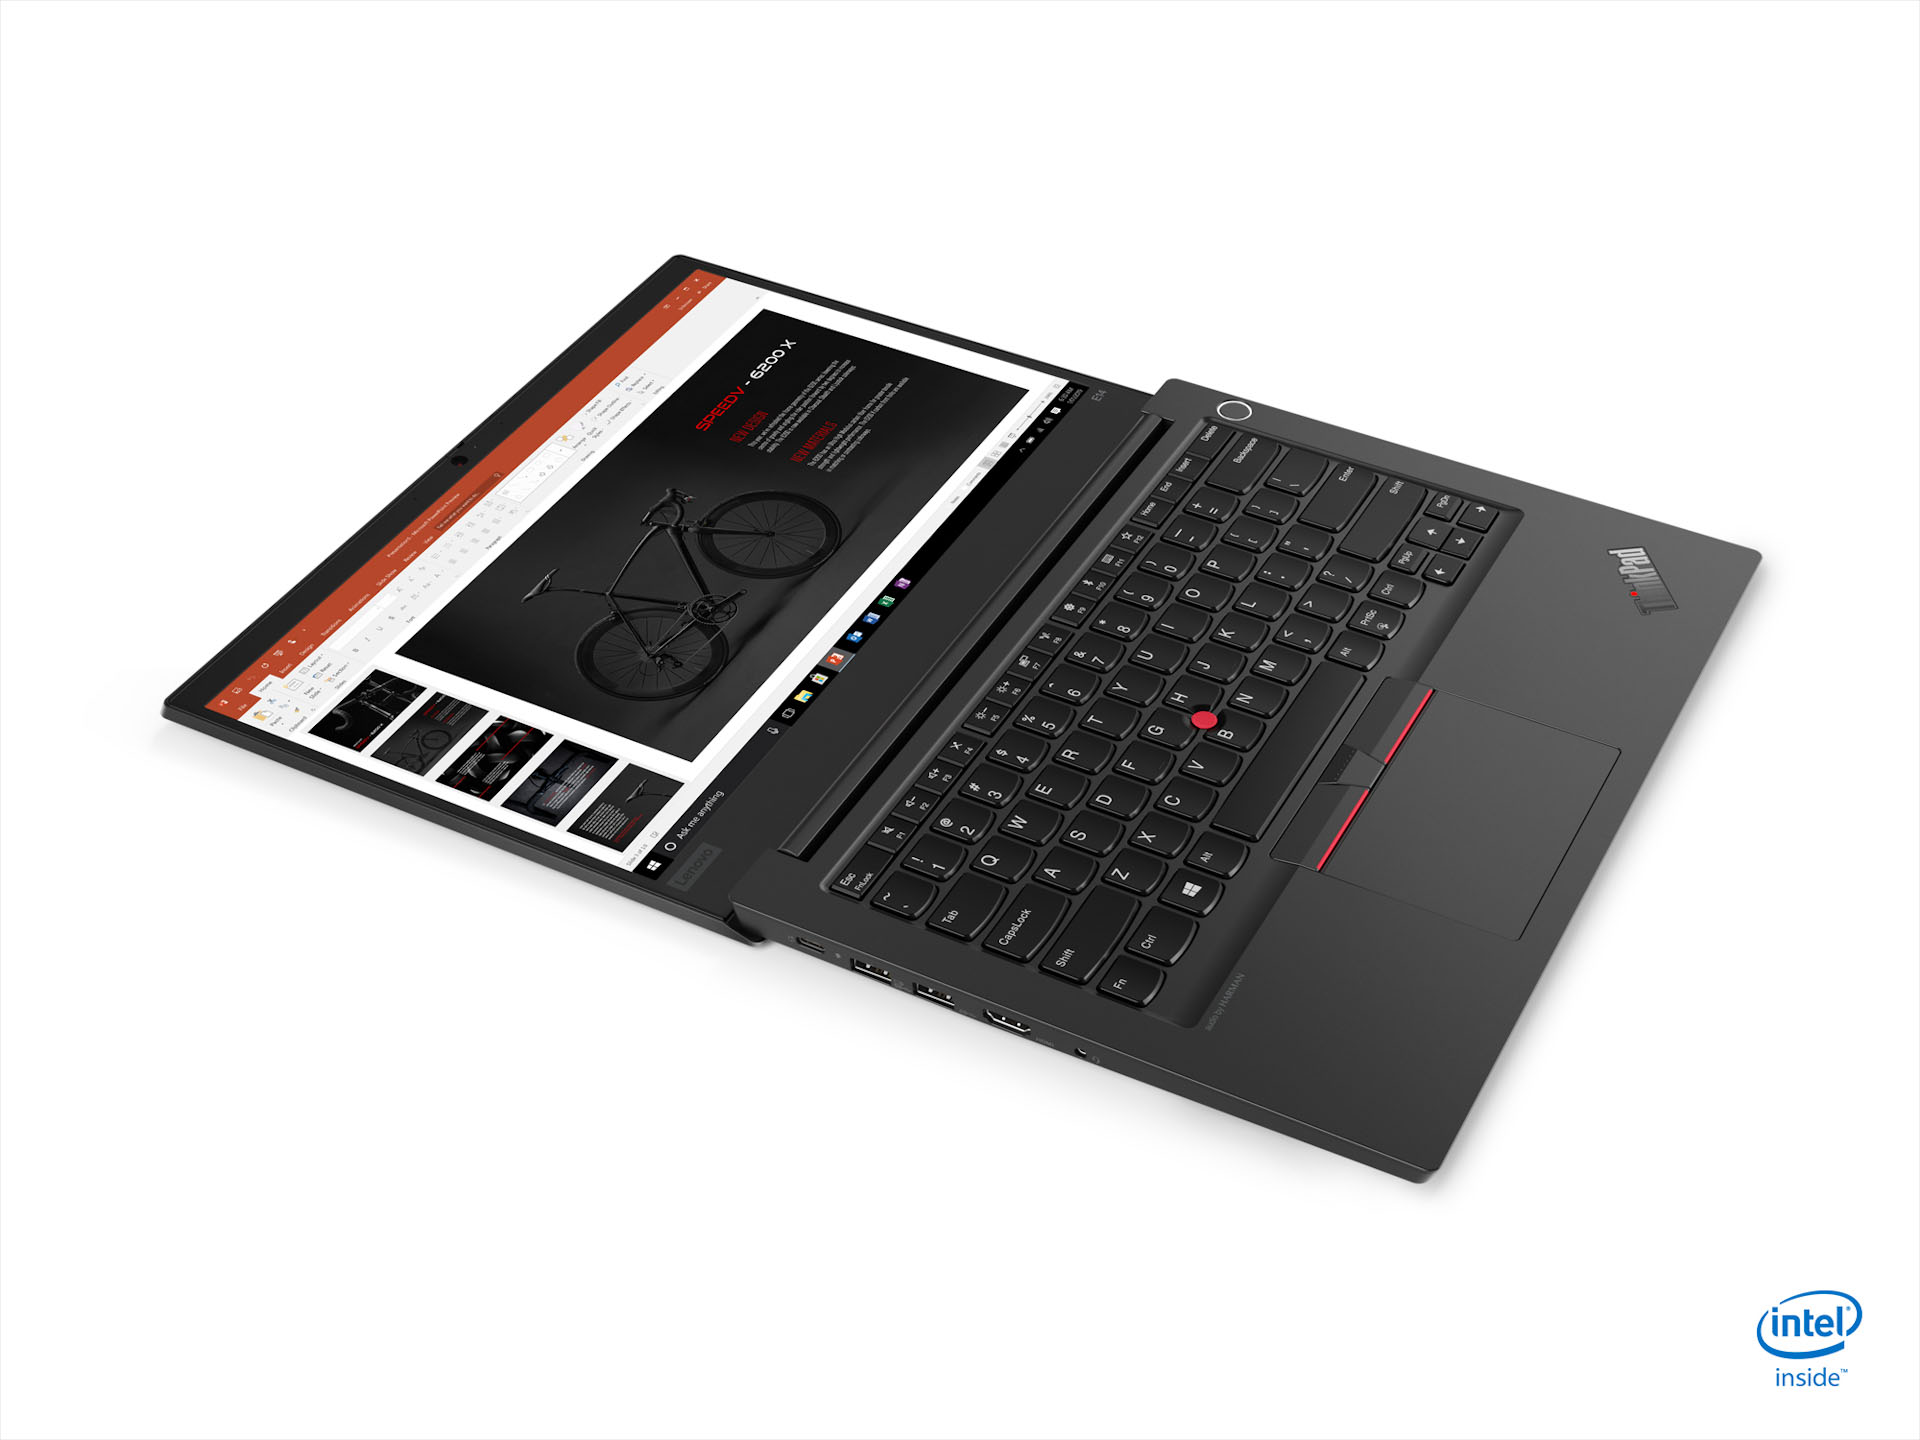 Laptop ThinkPad E Series lên kệ, giá từ 16.39 triệu đồng 6